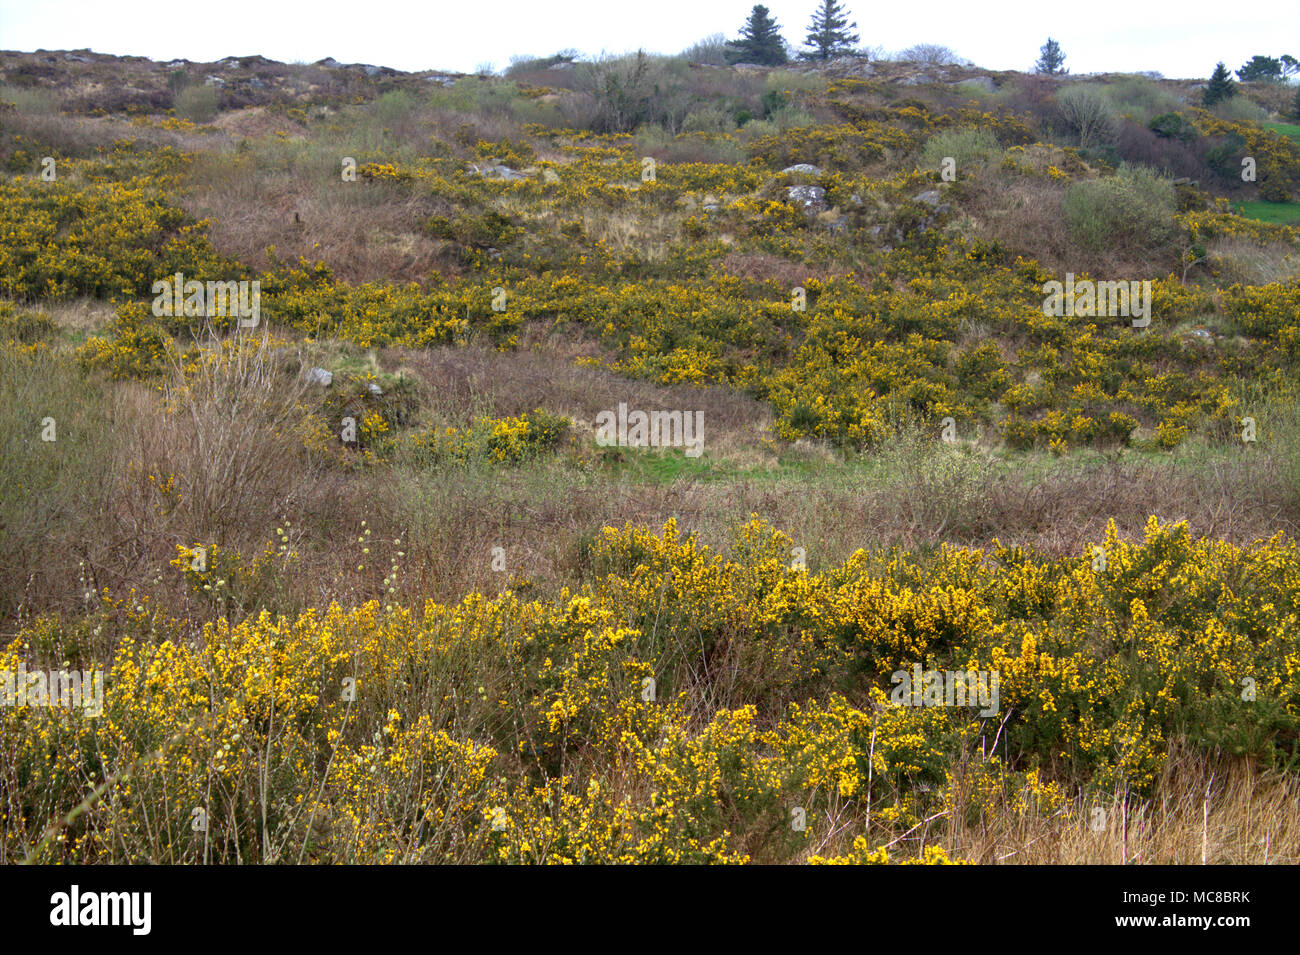 Ulex europaeus, Ginster in voller Blüte im Frühjahr auf einer irischen Hügel in leuchtend gelben Blüten. Stockfoto